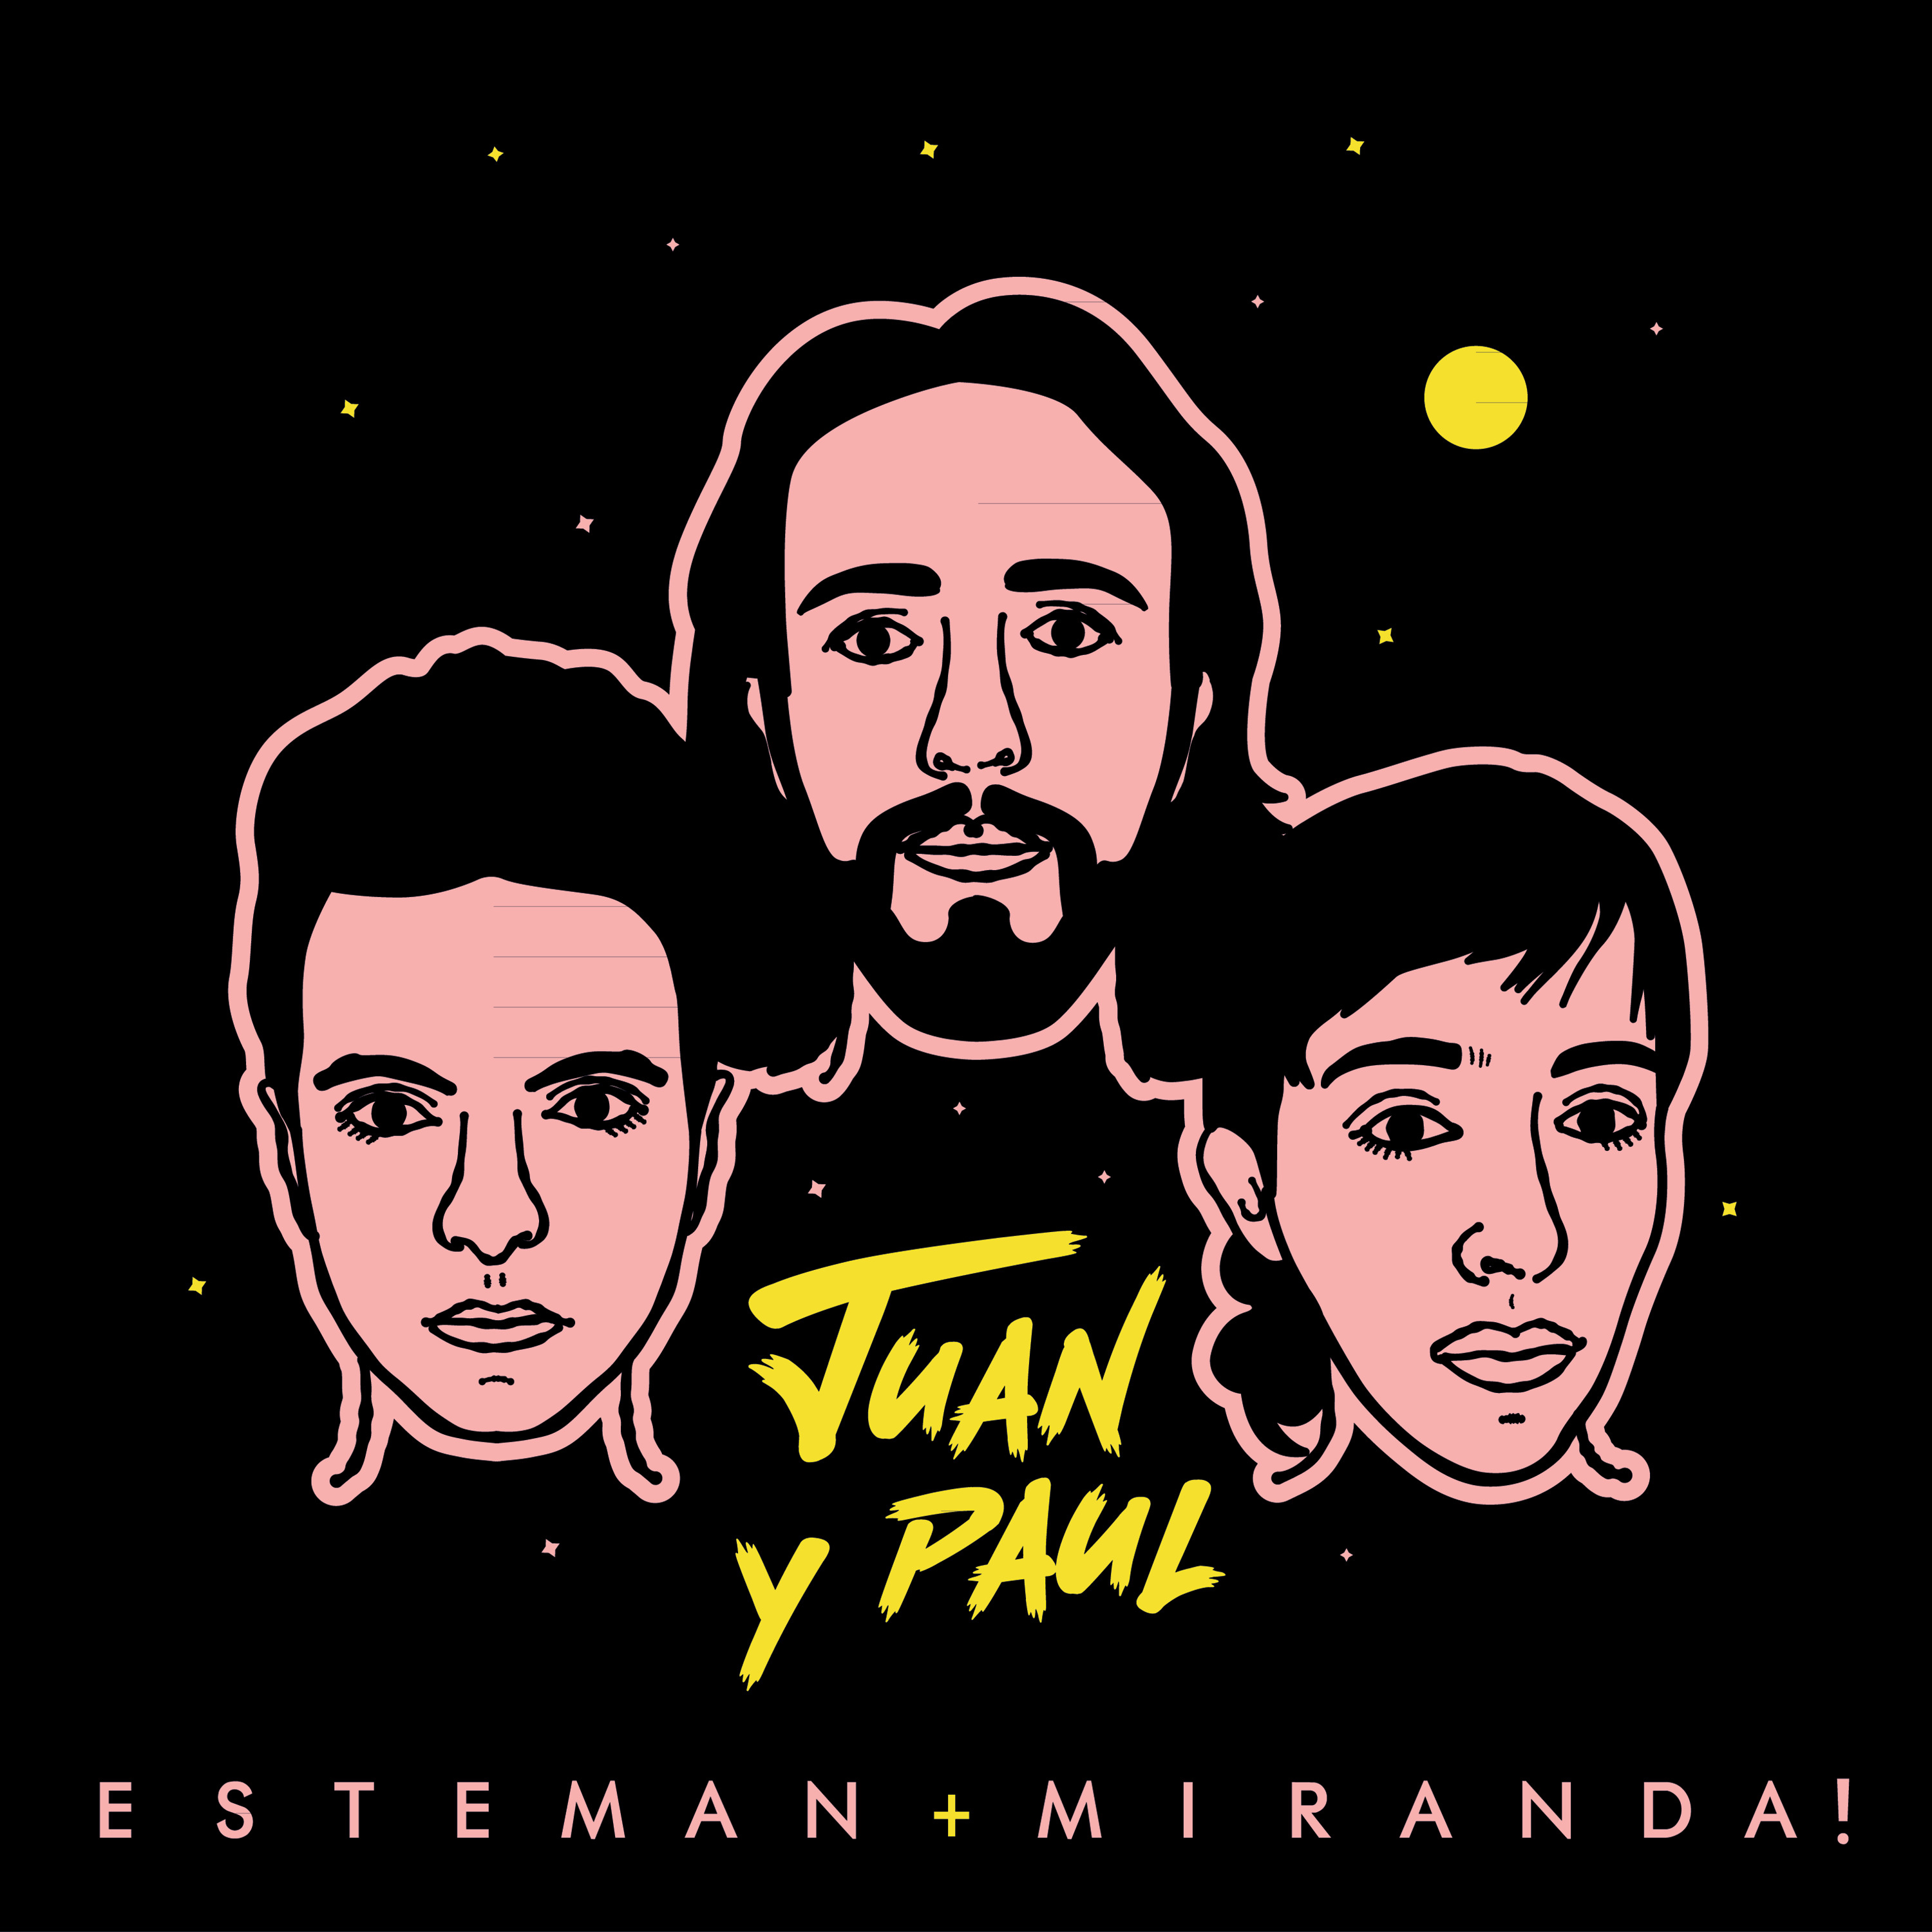 Esteman & Miranda! — Juan y Paul cover artwork